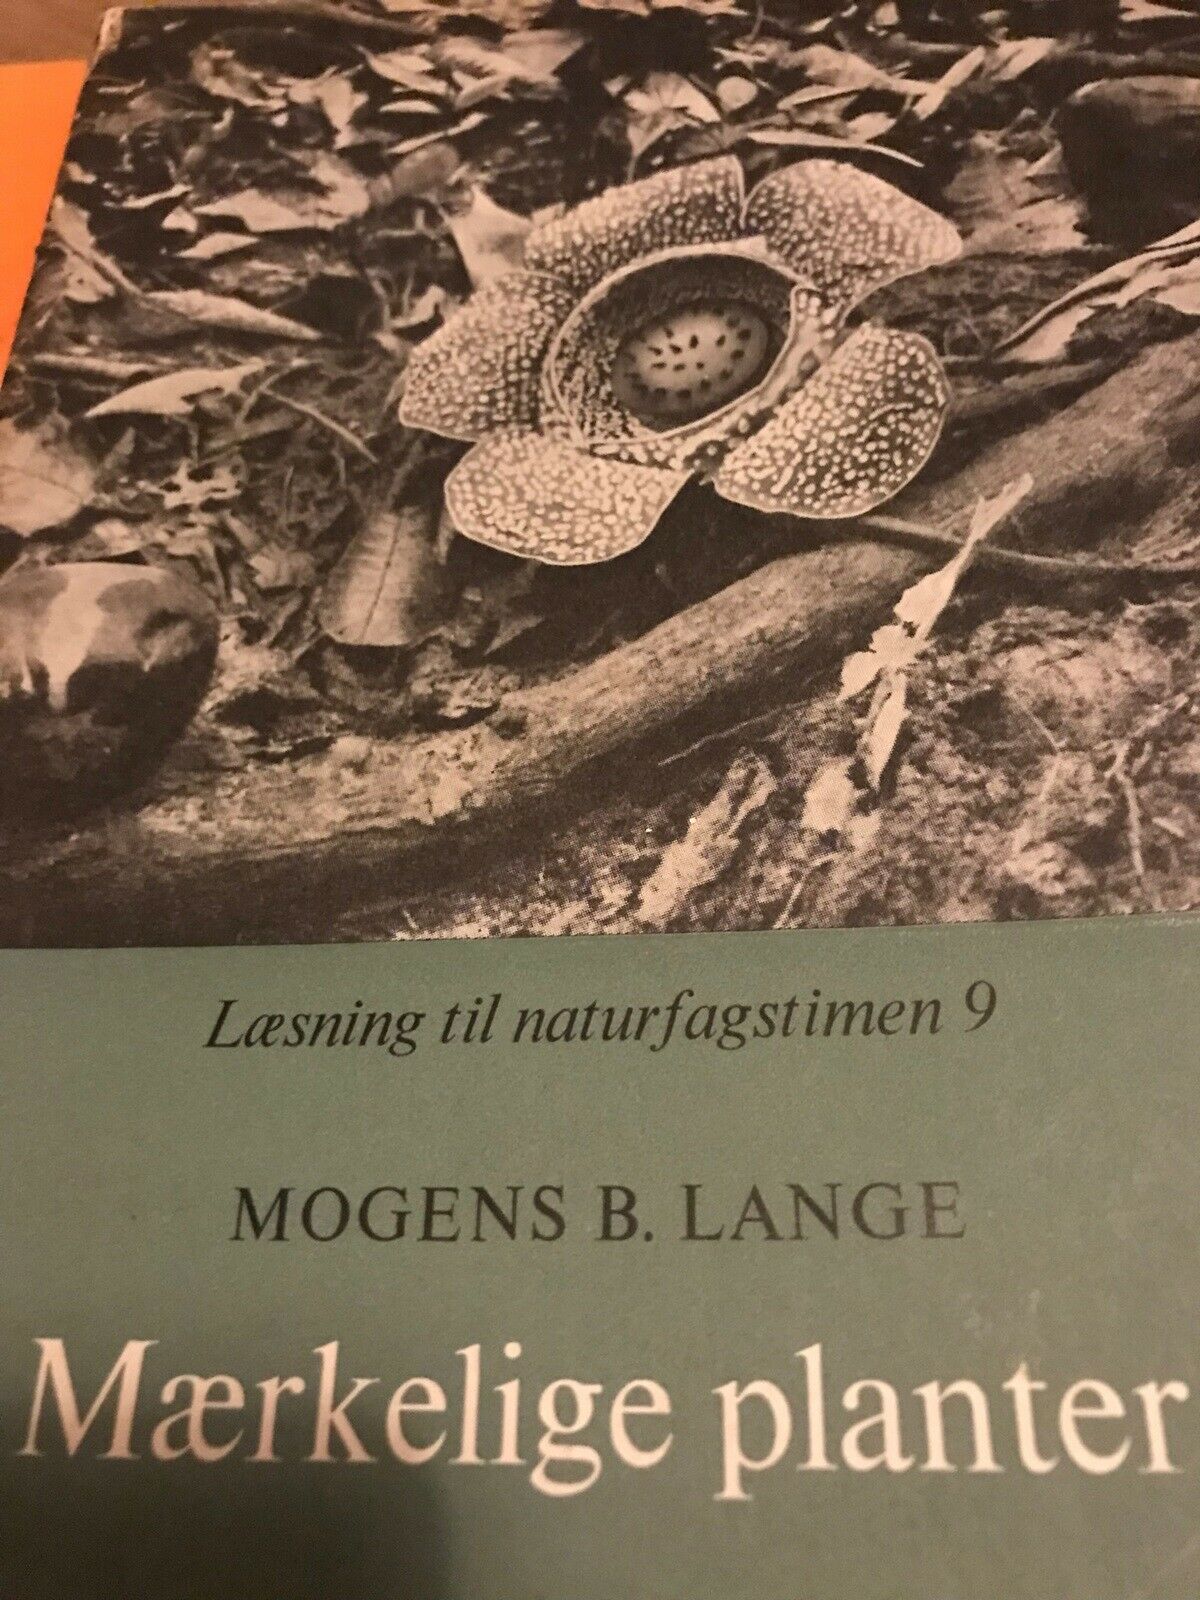 Mærkelige planter, Mogens BLange, - dba.dk - Køb og af Brugt